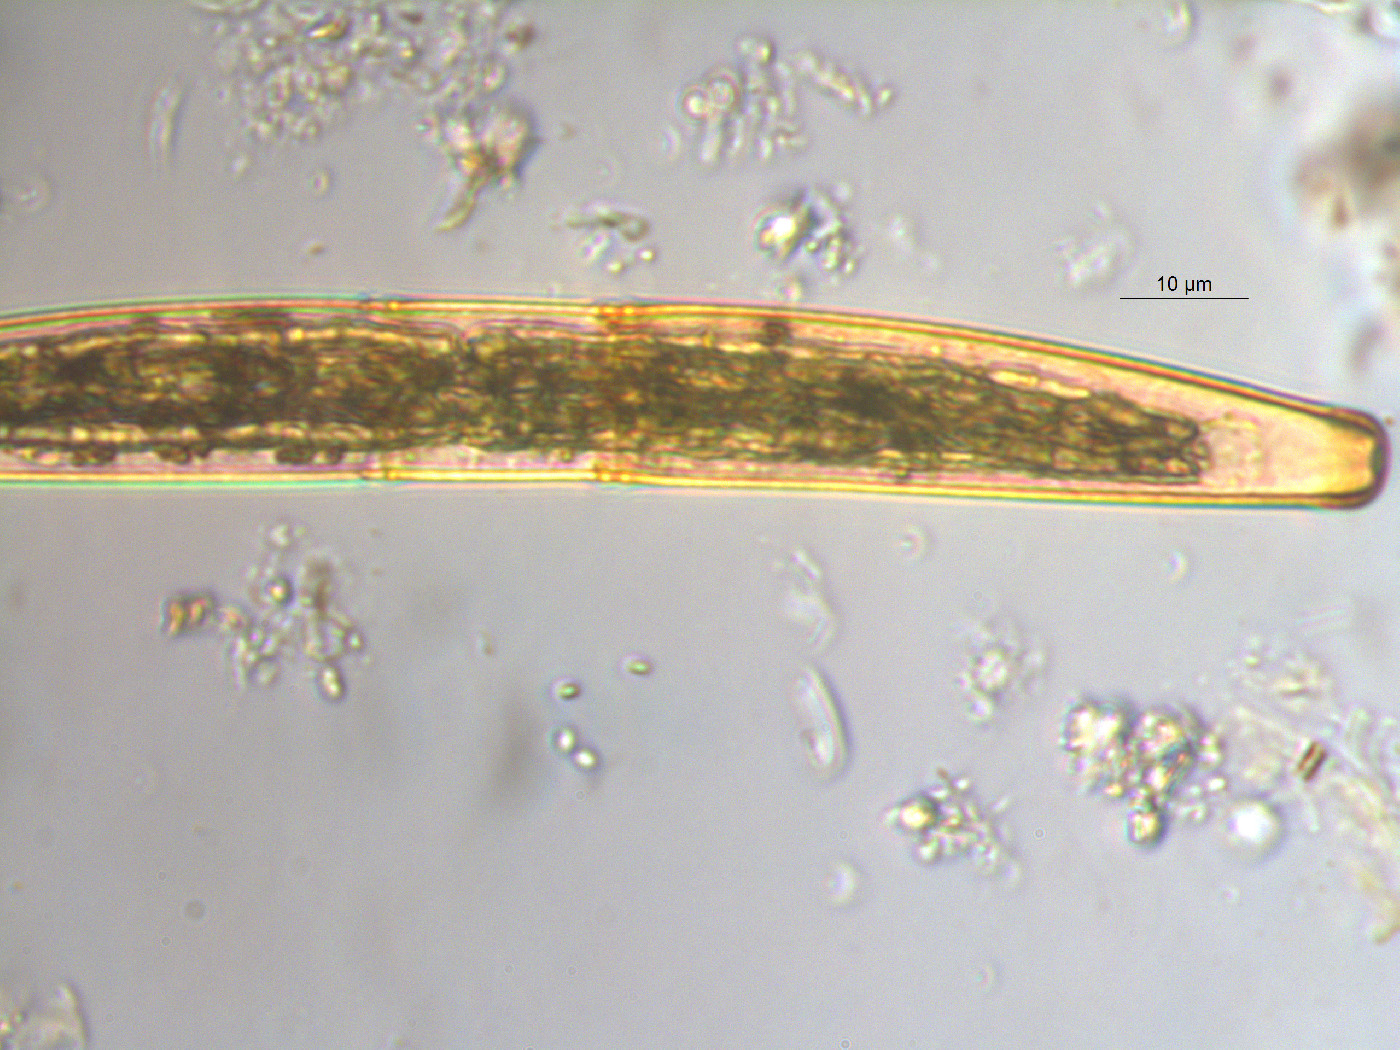 Closterium striolatum image